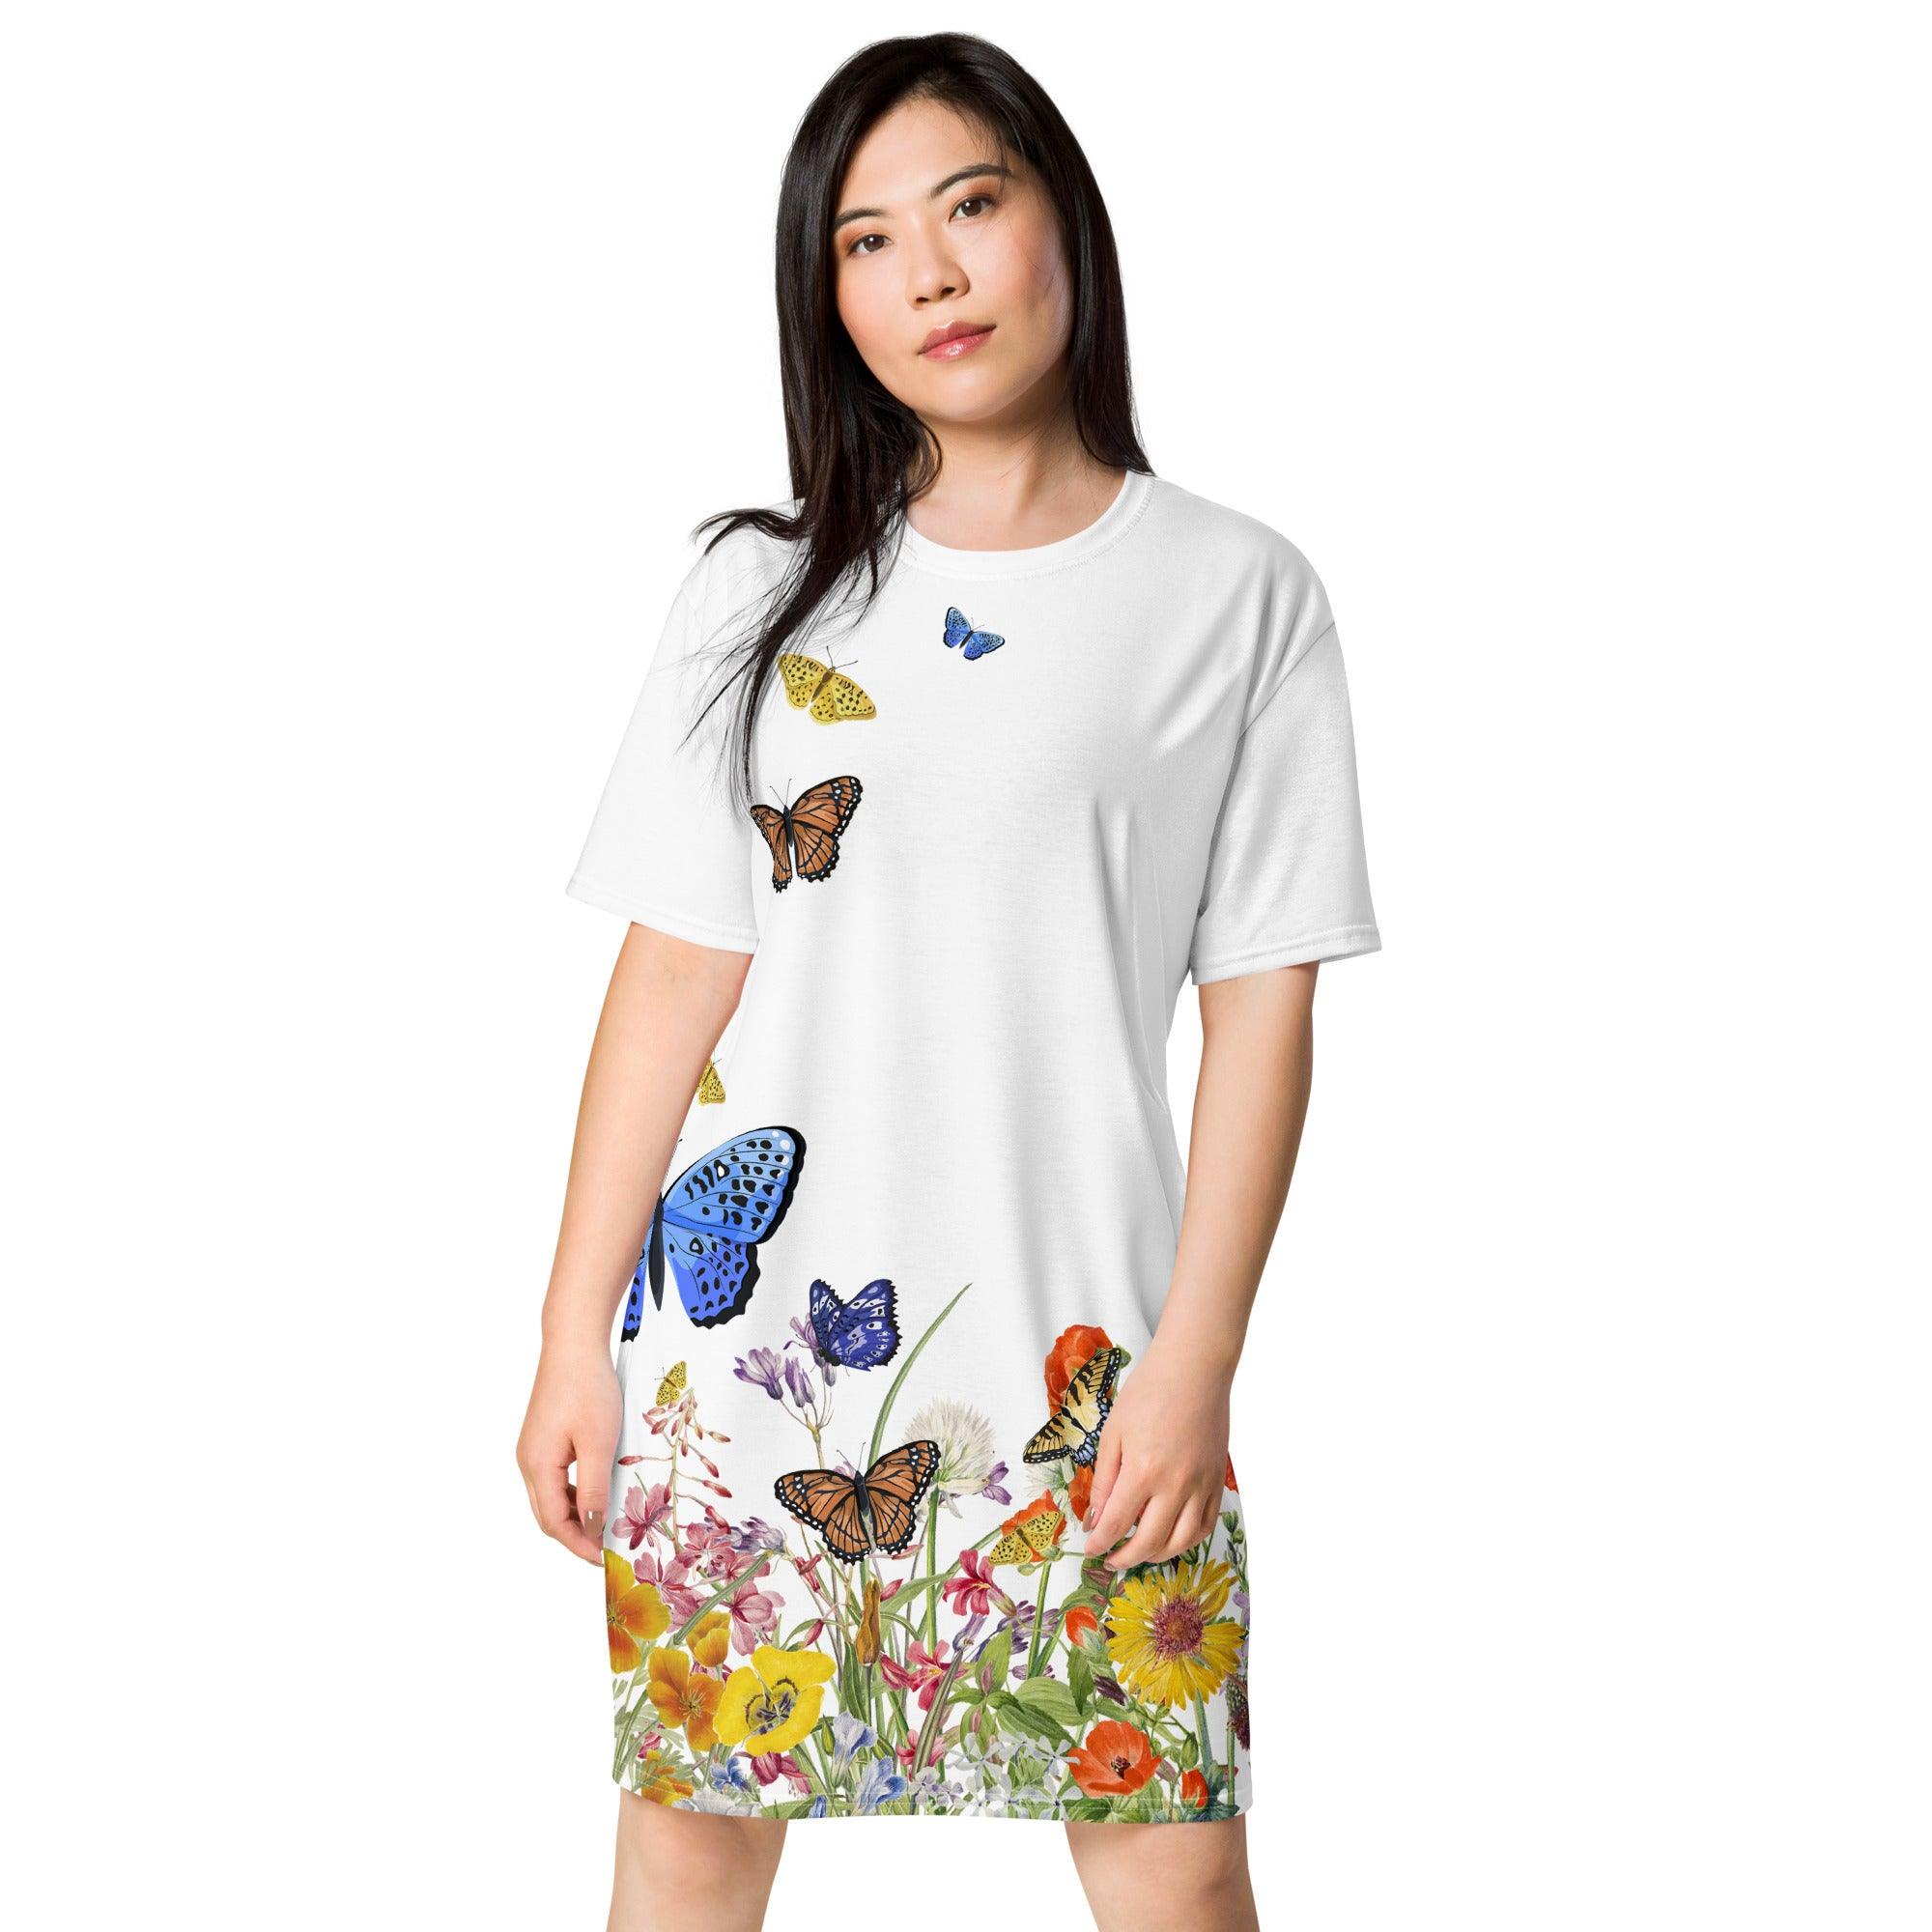 T-shirt dress-Butterfly Garden by Edward Martin - Elementologie